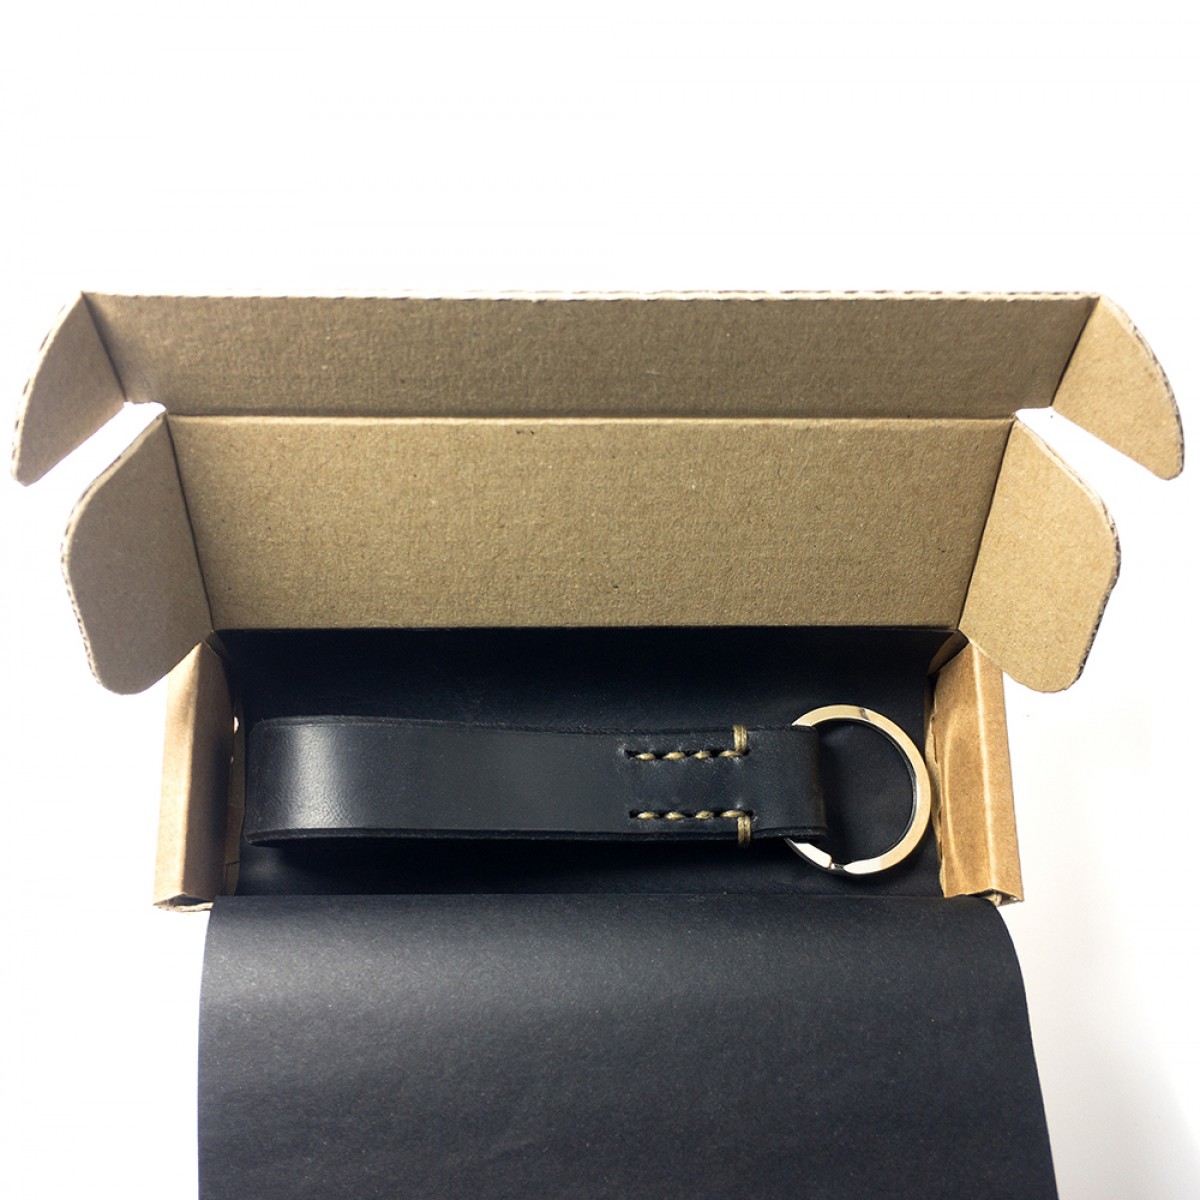 LIEBHARDT - Leder Schlüsselanhänger, handgenäht aus pflanzlich gegerbtem Echt-Leder - massive Sattlernaht - handstitched (schwarz mit dunkelbeiger Naht)